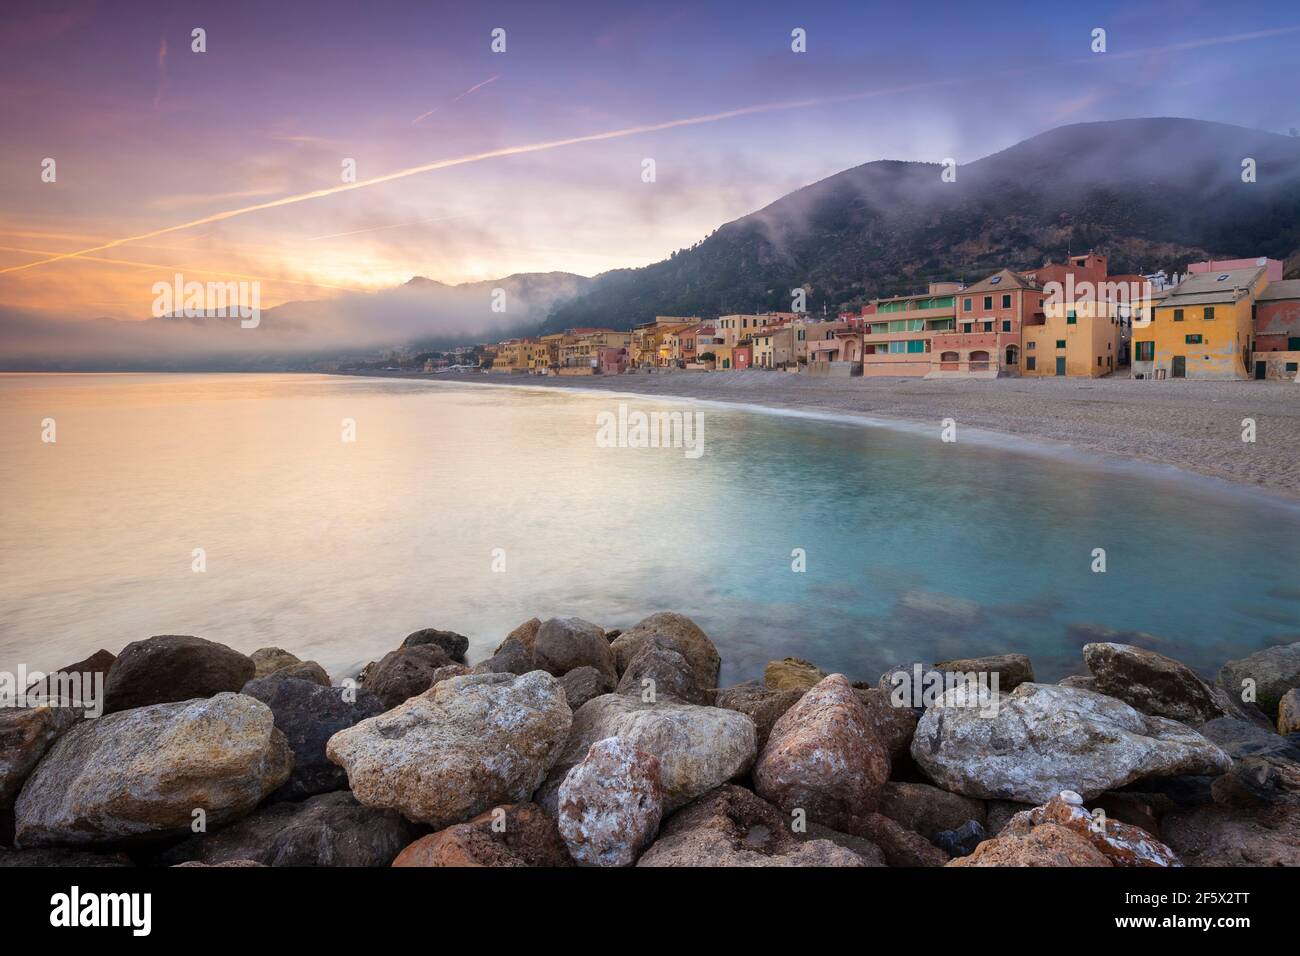 Tramonto sulle case colorate e sulla spiaggia di Varigotti, finale Ligure, Savona, Ponente Riviera, Liguria, Italia. Foto Stock